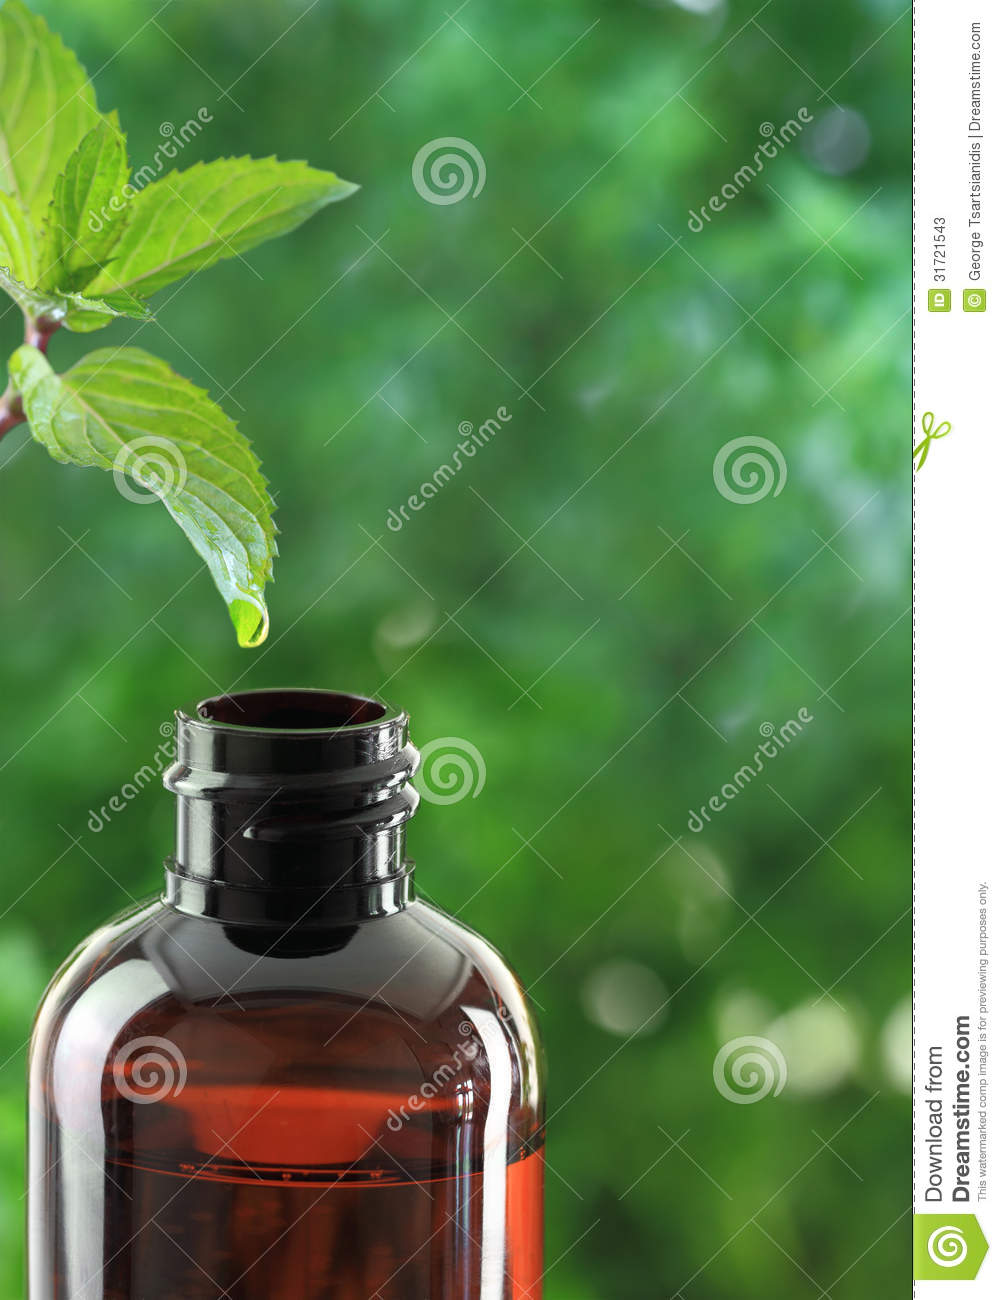 Drop Falling Of Mint Leaf In An Essential Oil Bottle 